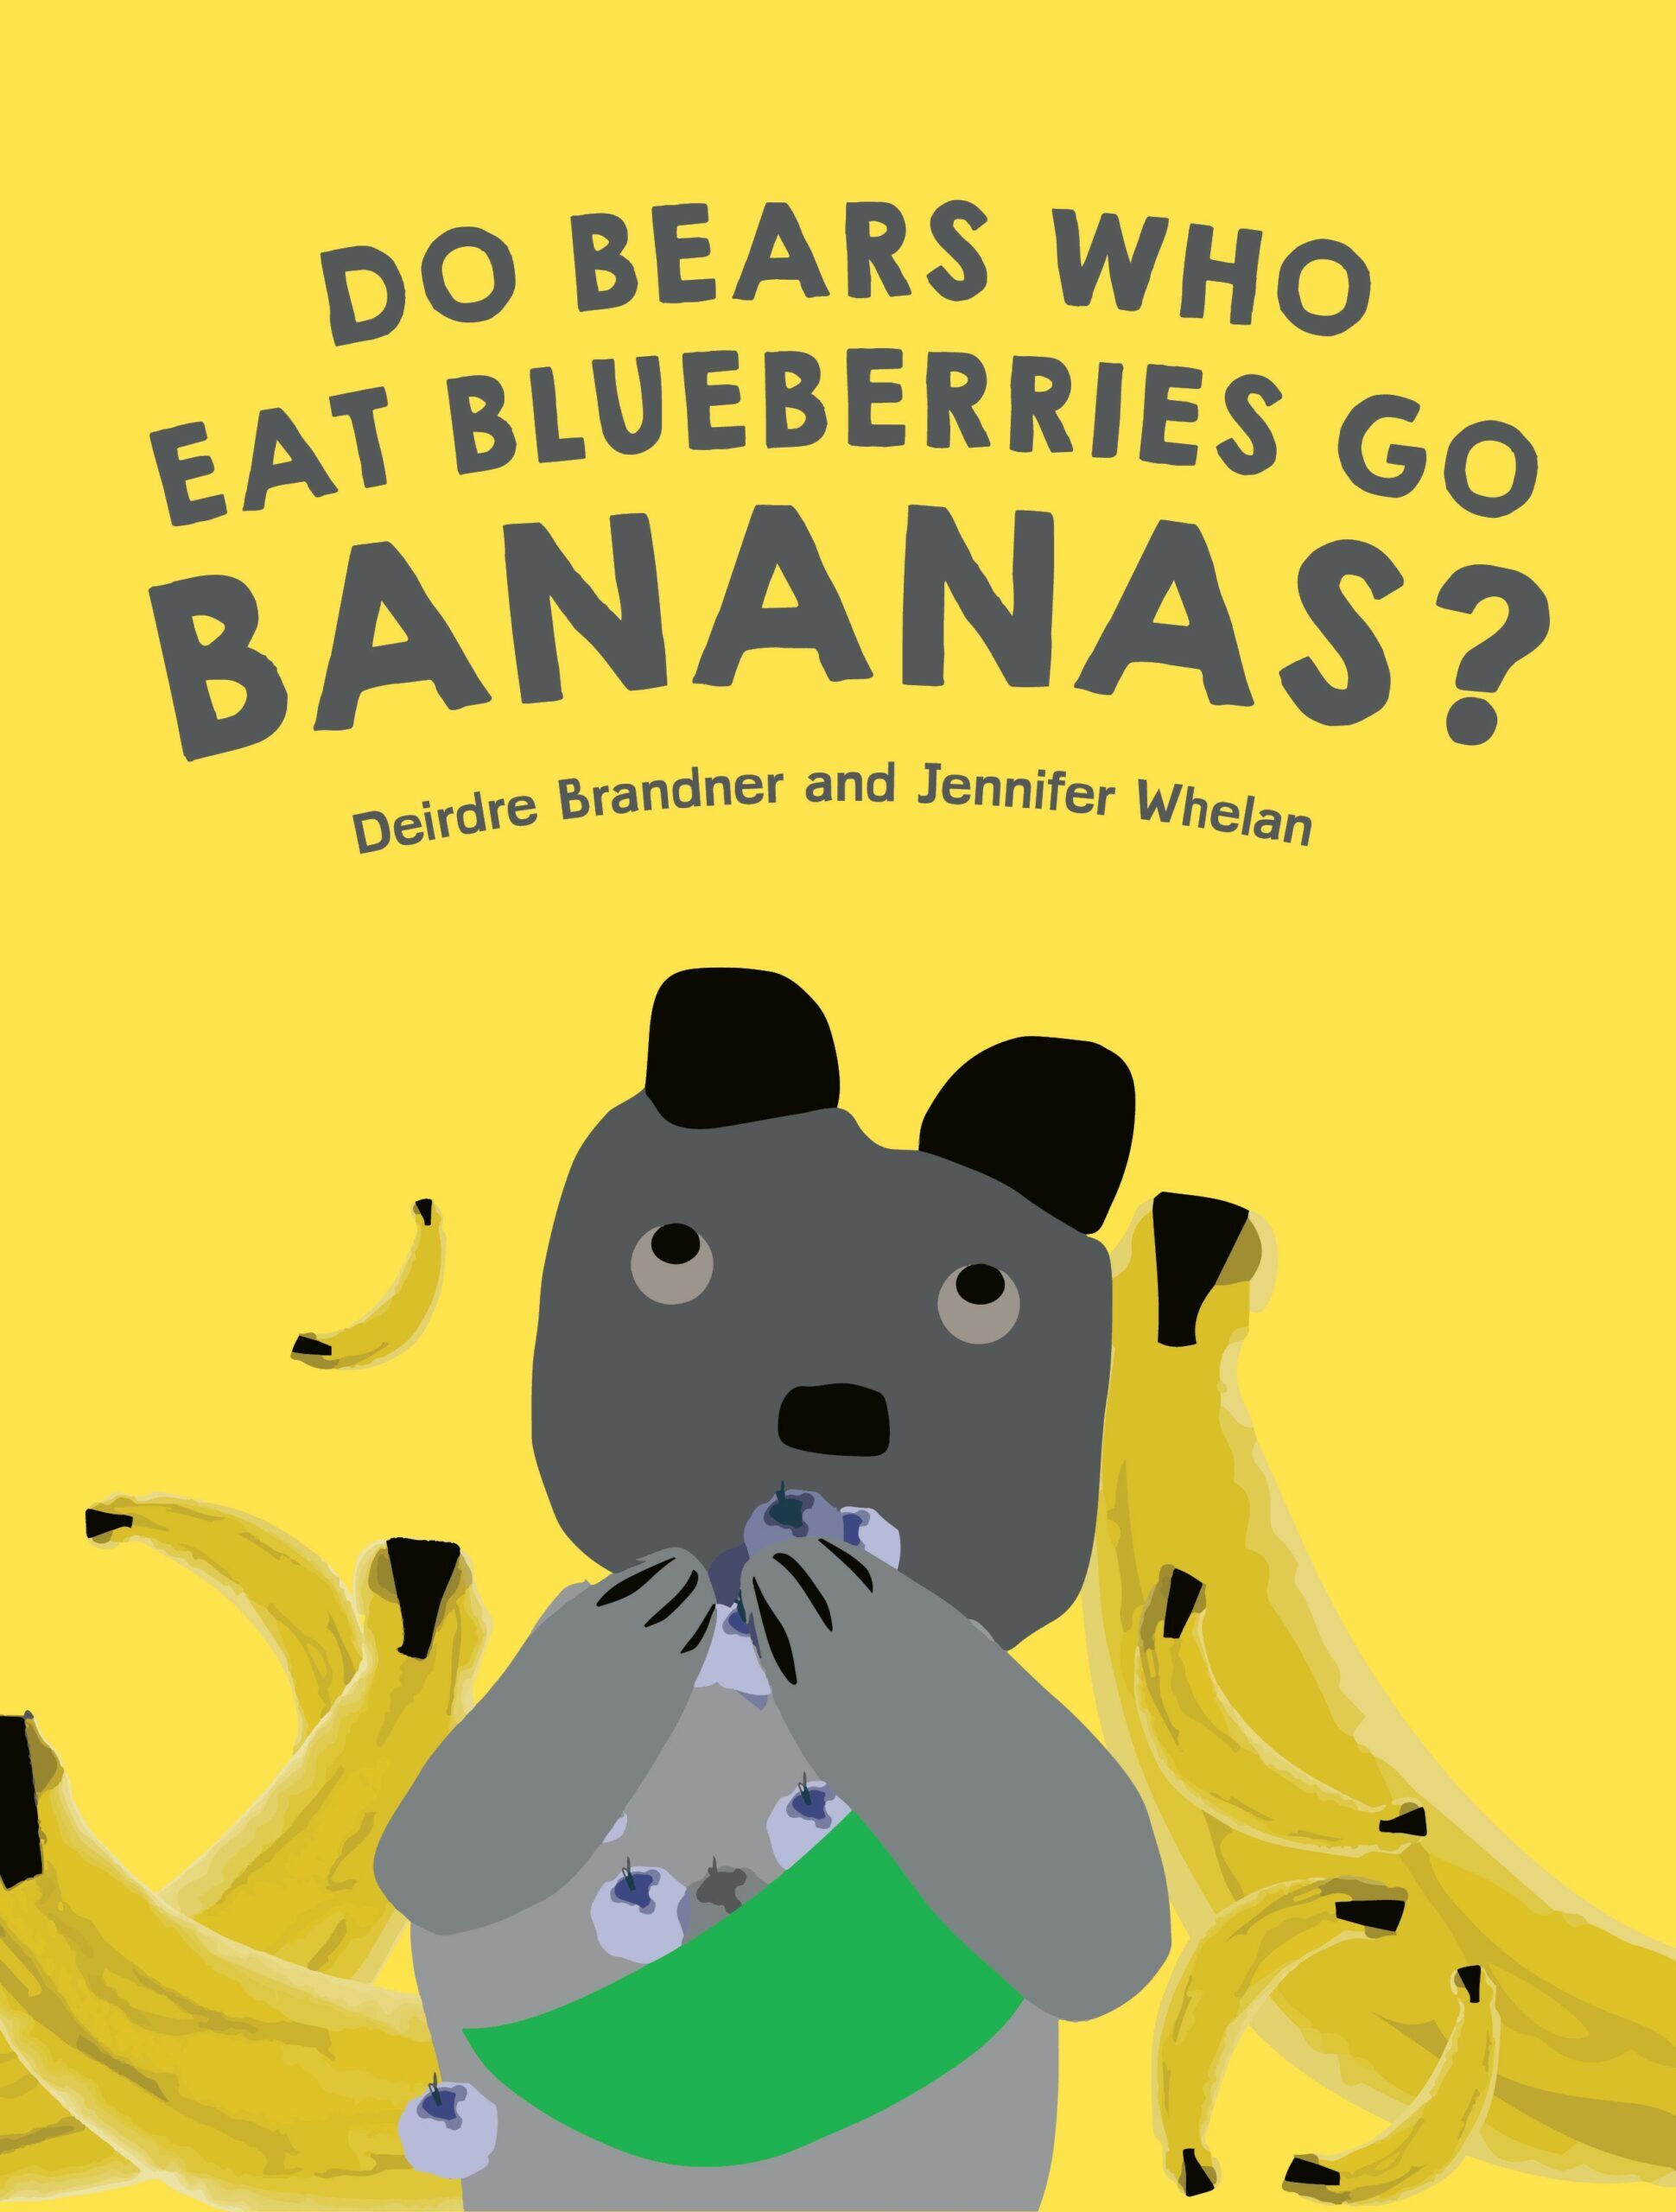 Bears who eat blueberries go bananas